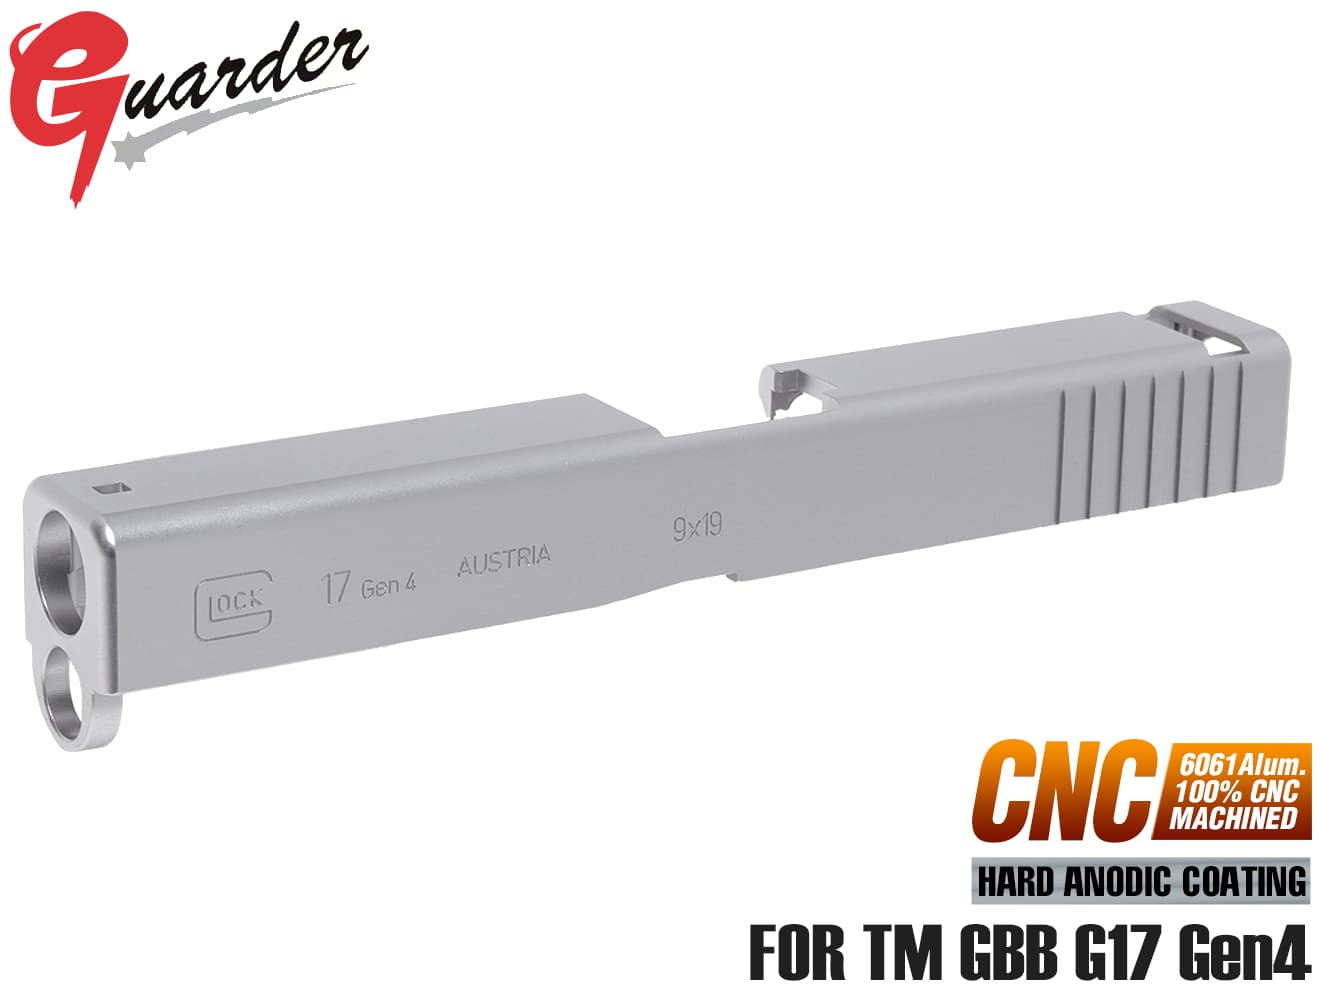 GLK-211(SV)■GUARDER G17 Gen4 9mm アルミCNC スライド for マルイ G17 Gen4◆東京マルイ MARUI GLOCK グロック ガスブロ 強化 ブラスト処理 マット 質感再現